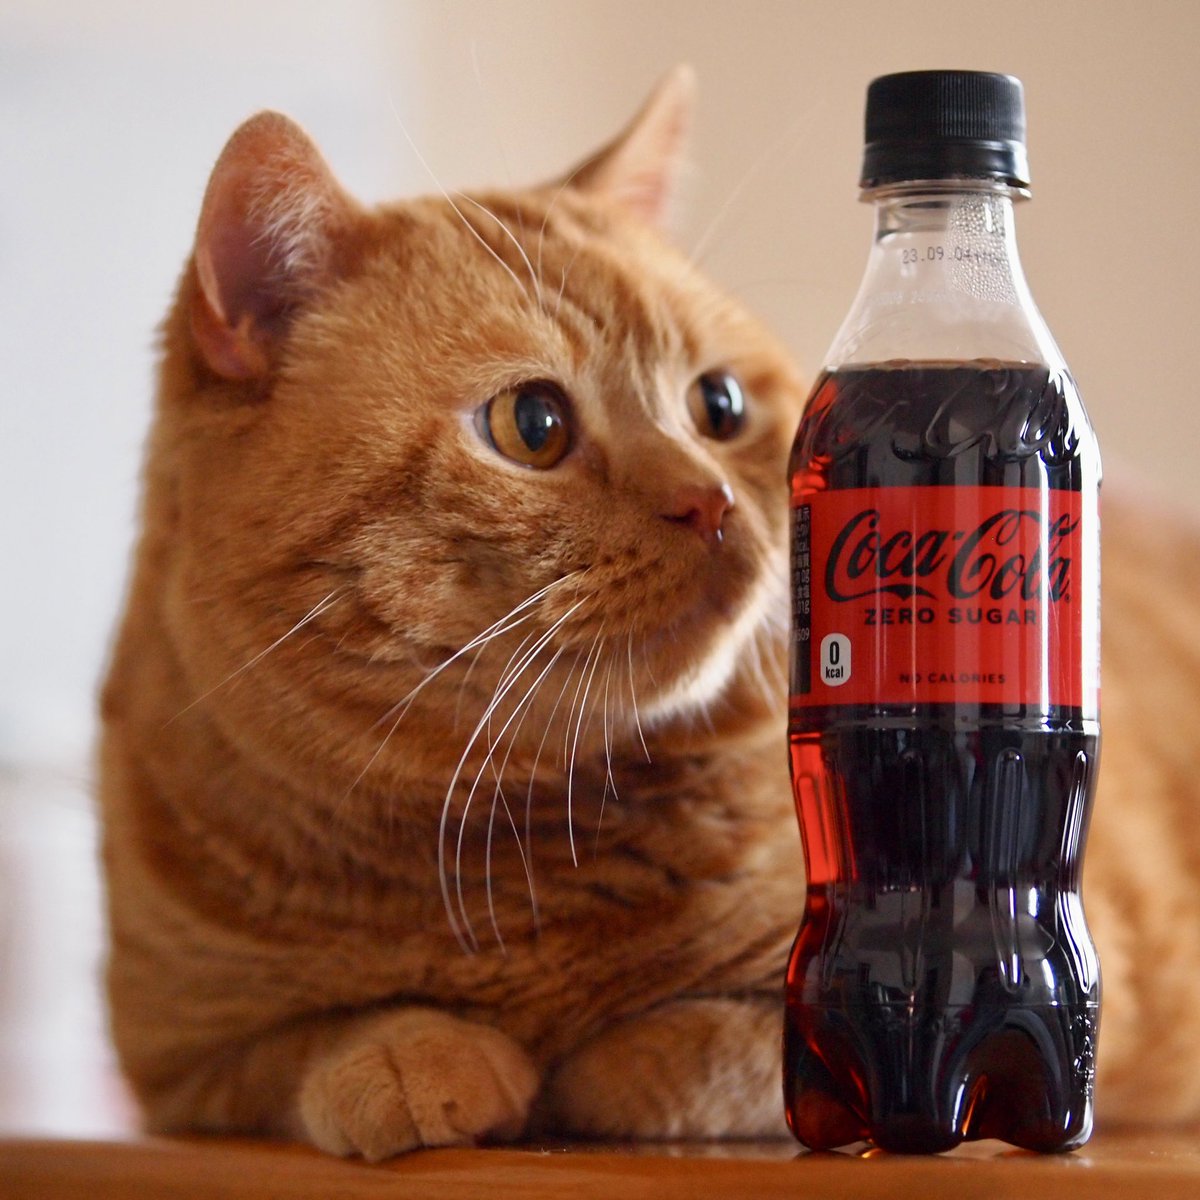 パパはどっちがいいかにゃあ😽

#コカコーラ #coke #cats #catlovers #catsoftiktok #猫のいる暮らし #困り顔 #茶トラ #kitten #catstagram #meow #catsofinstagram #catsoftwitter